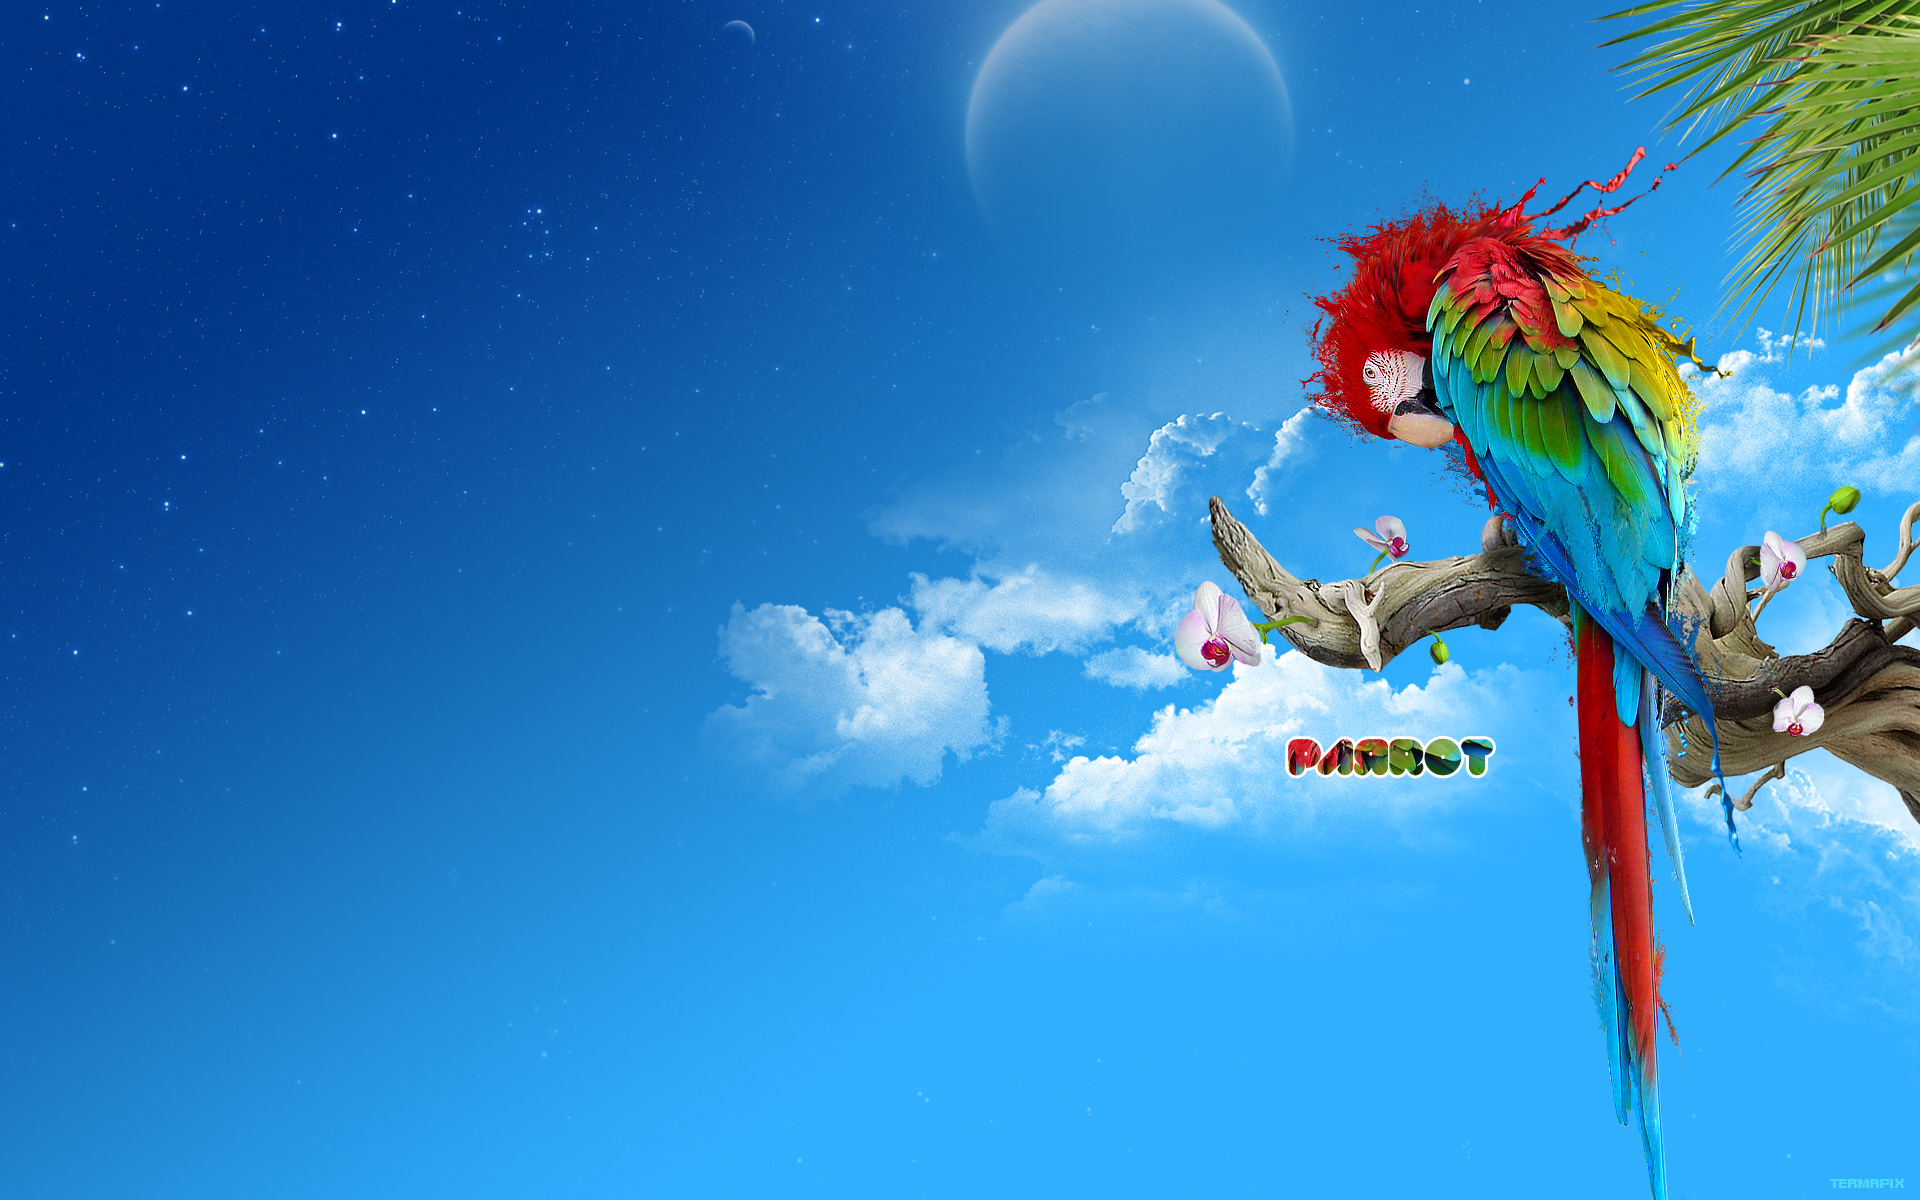 Parrot Art Wallpapers - Top Free Parrot Art Backgrounds - WallpaperAccess